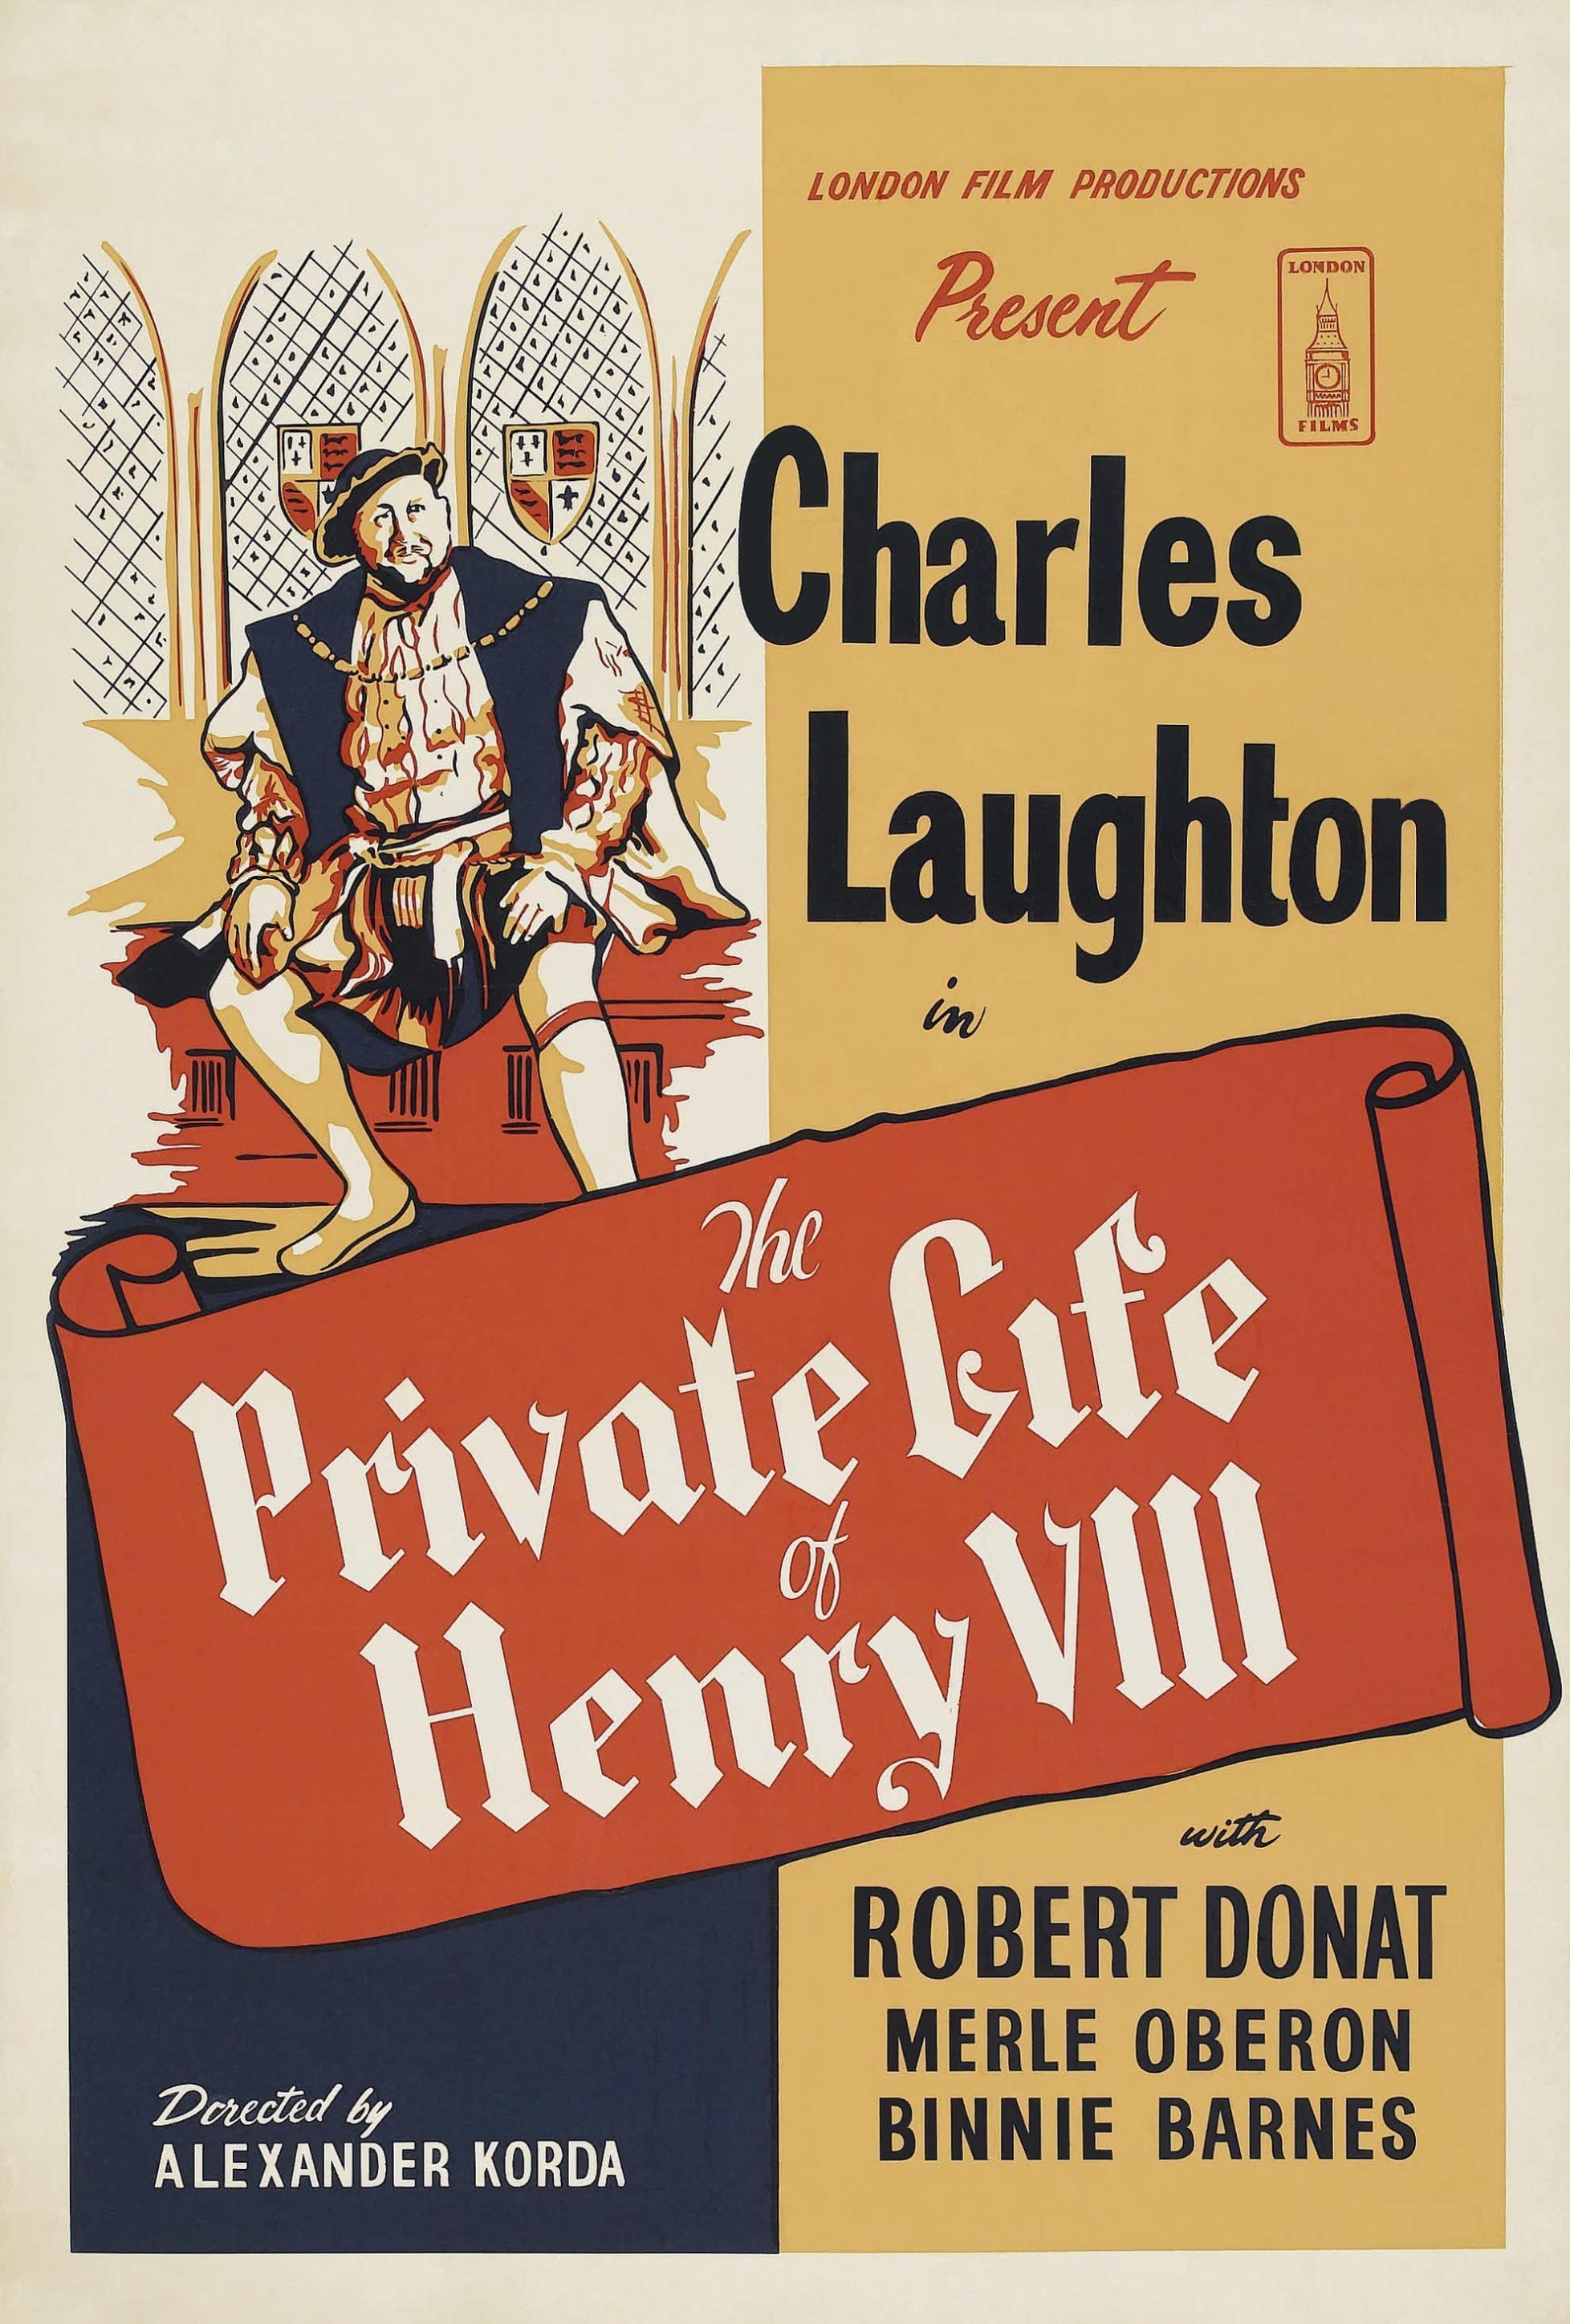 Постер фильма Частная жизнь Генриха VIII | Private Life of Henry VIII.